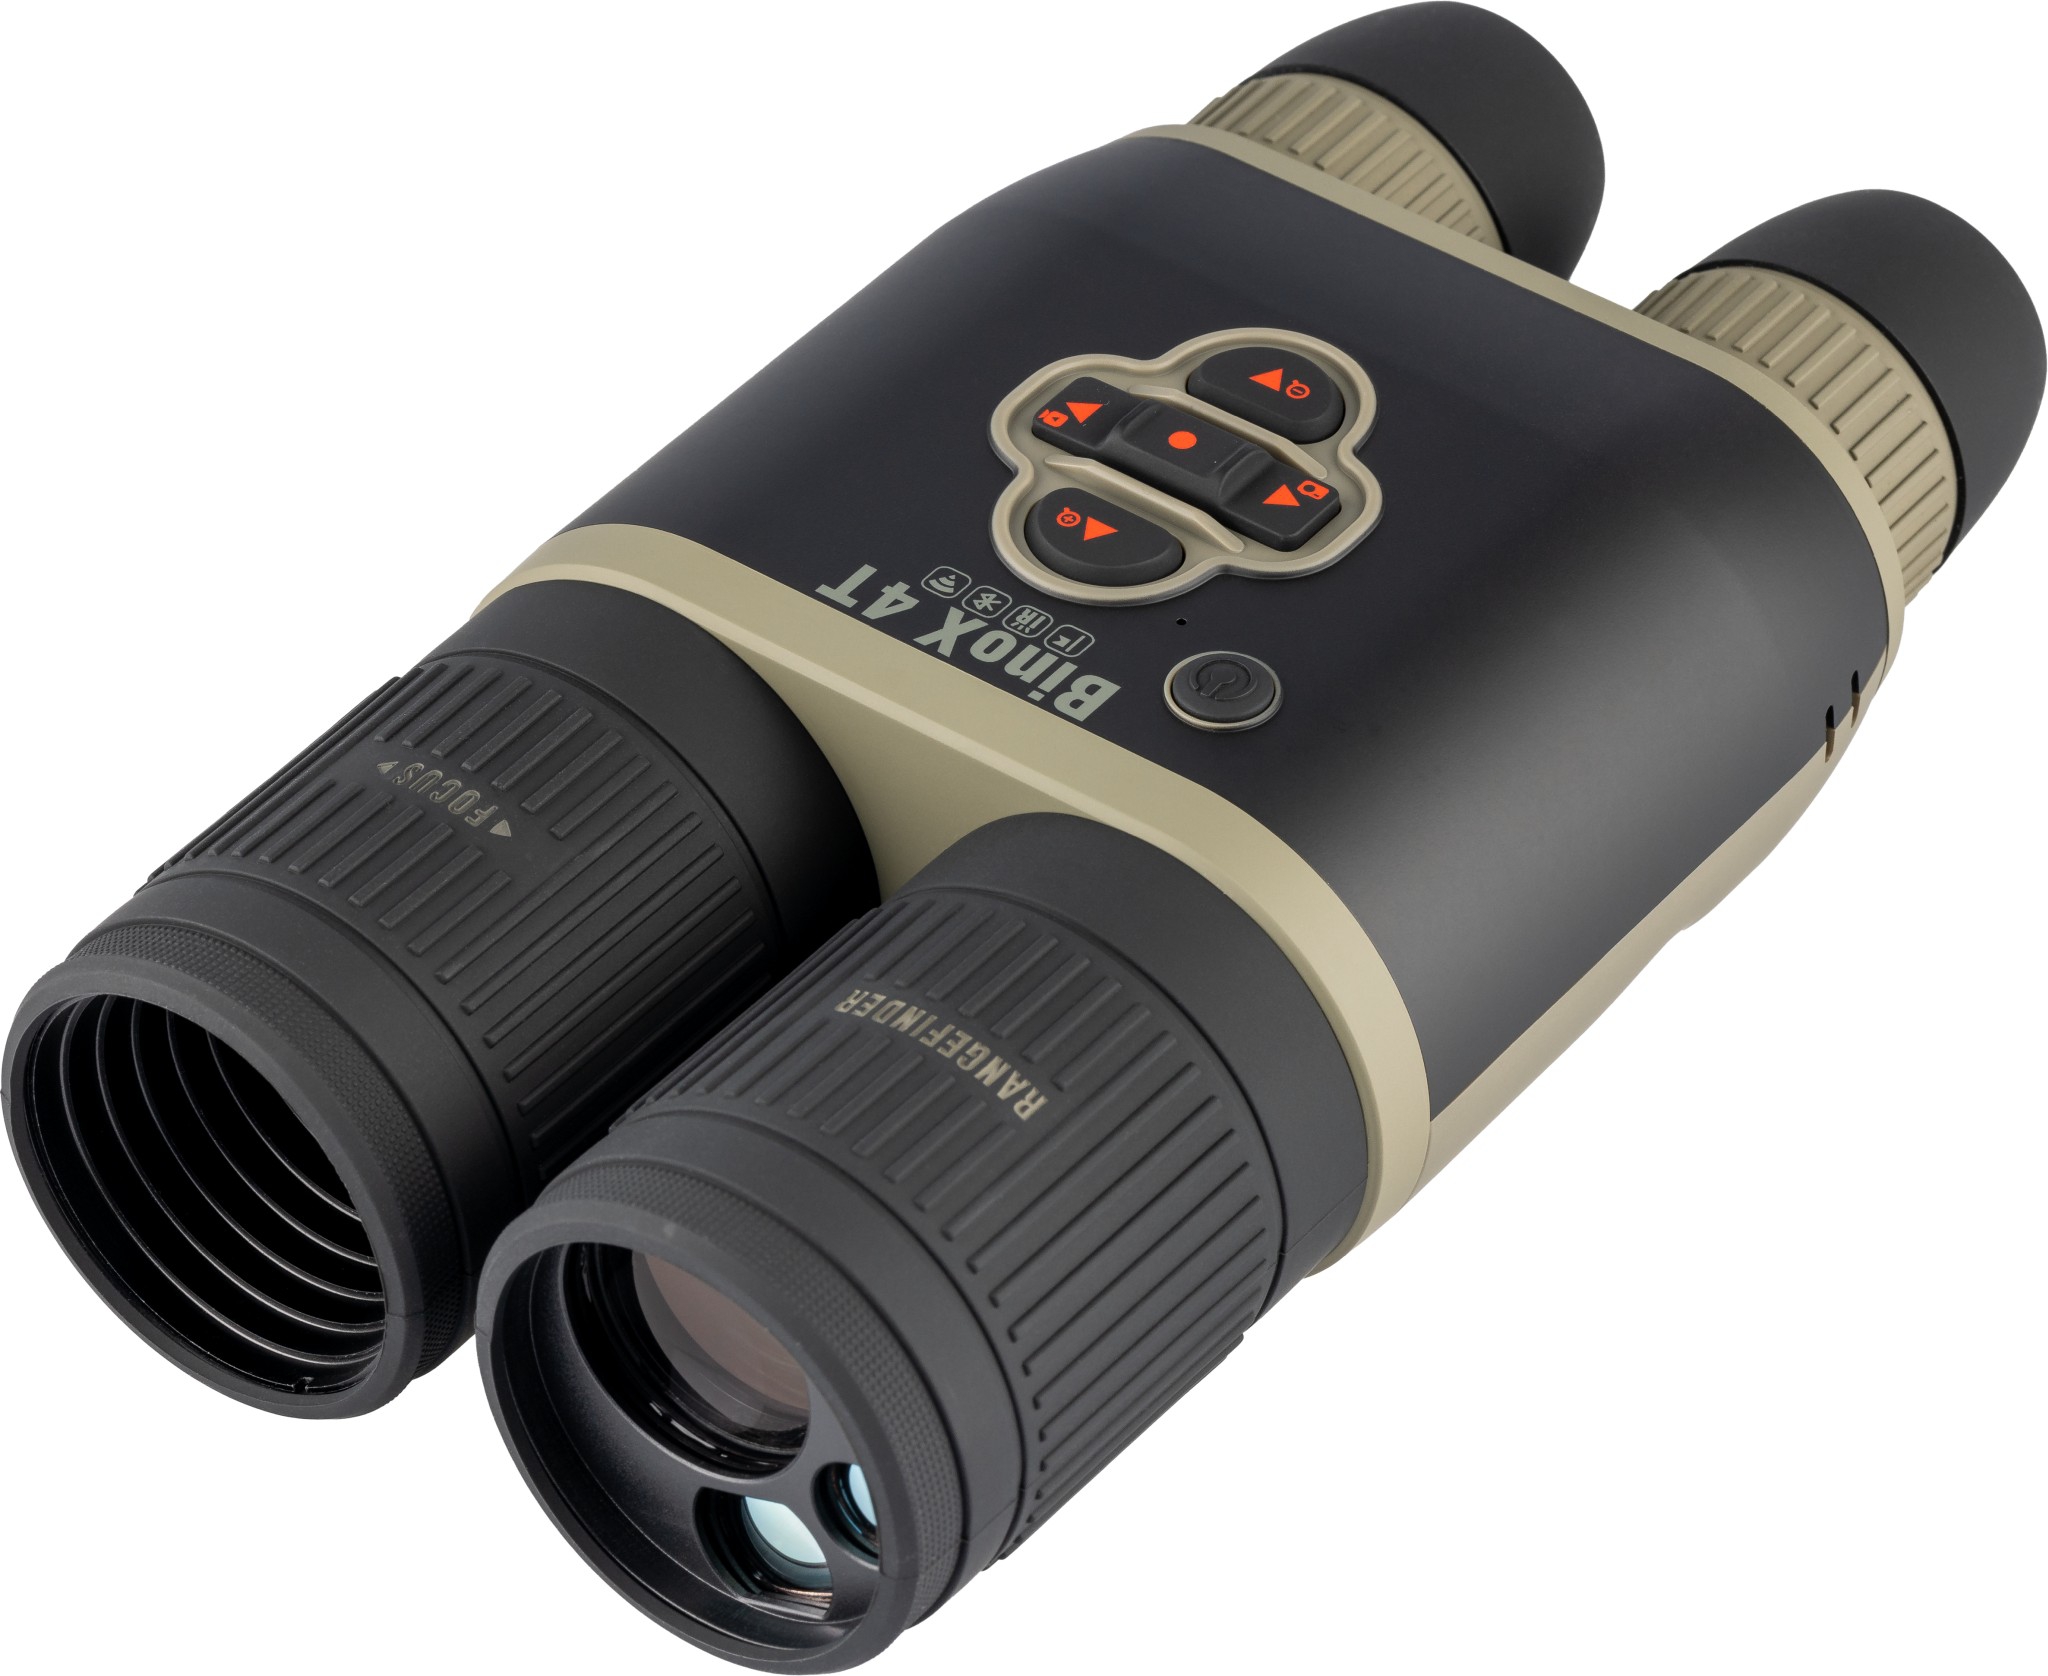 ATN BINOX 4T 384 - 19 mm - 1.25-5x, Smart HD Thermal Binoculars w/ Laser Rangefinder